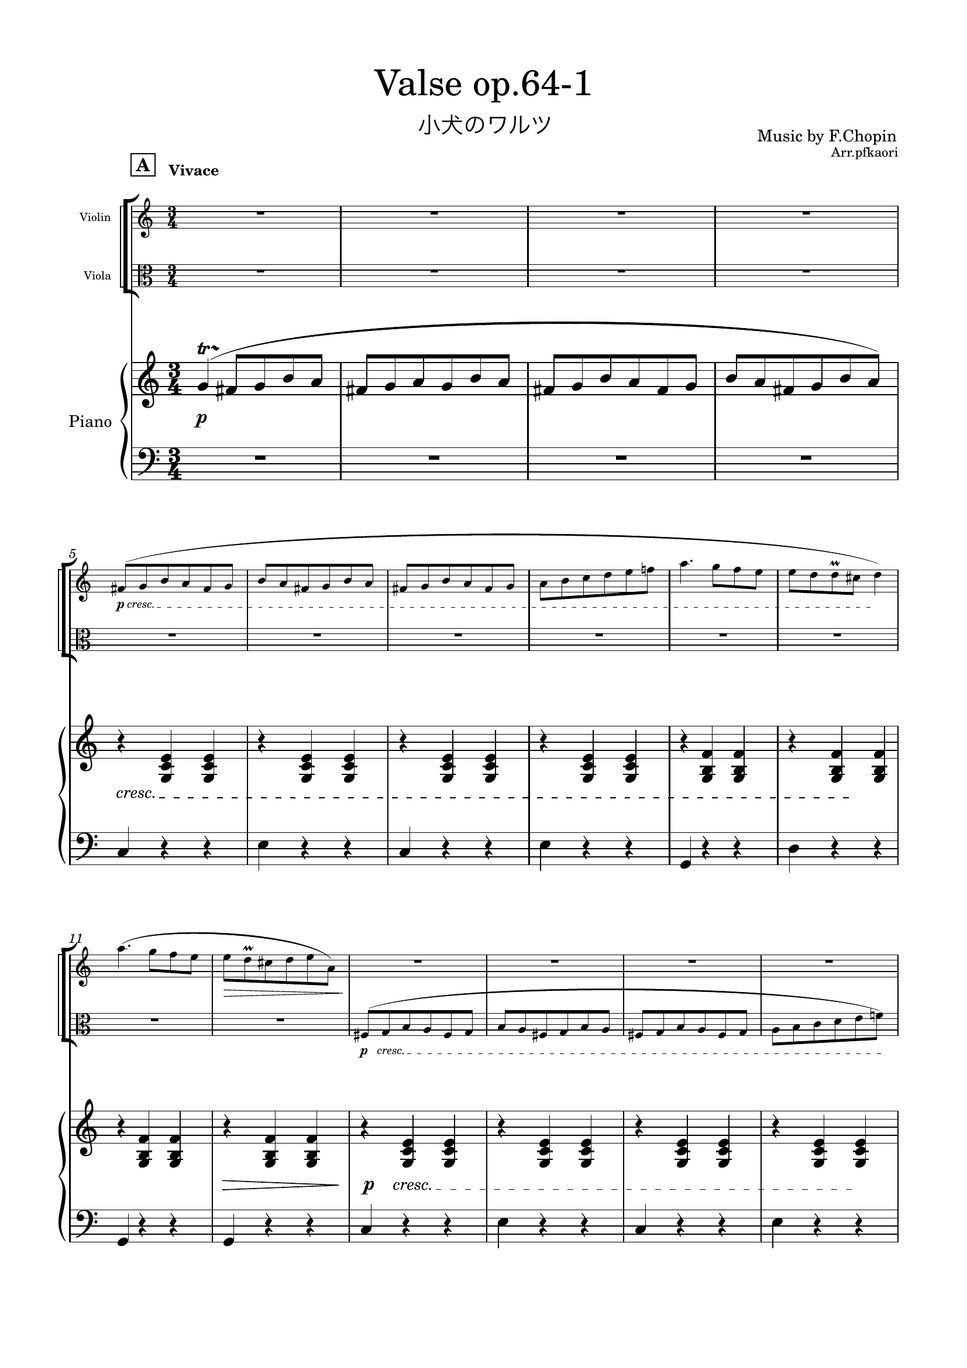 ショパン - 小犬のワルツ (2版/Cdur・ピアノトリオ/ヴァイオリン&ヴィオラ) by pfkaori